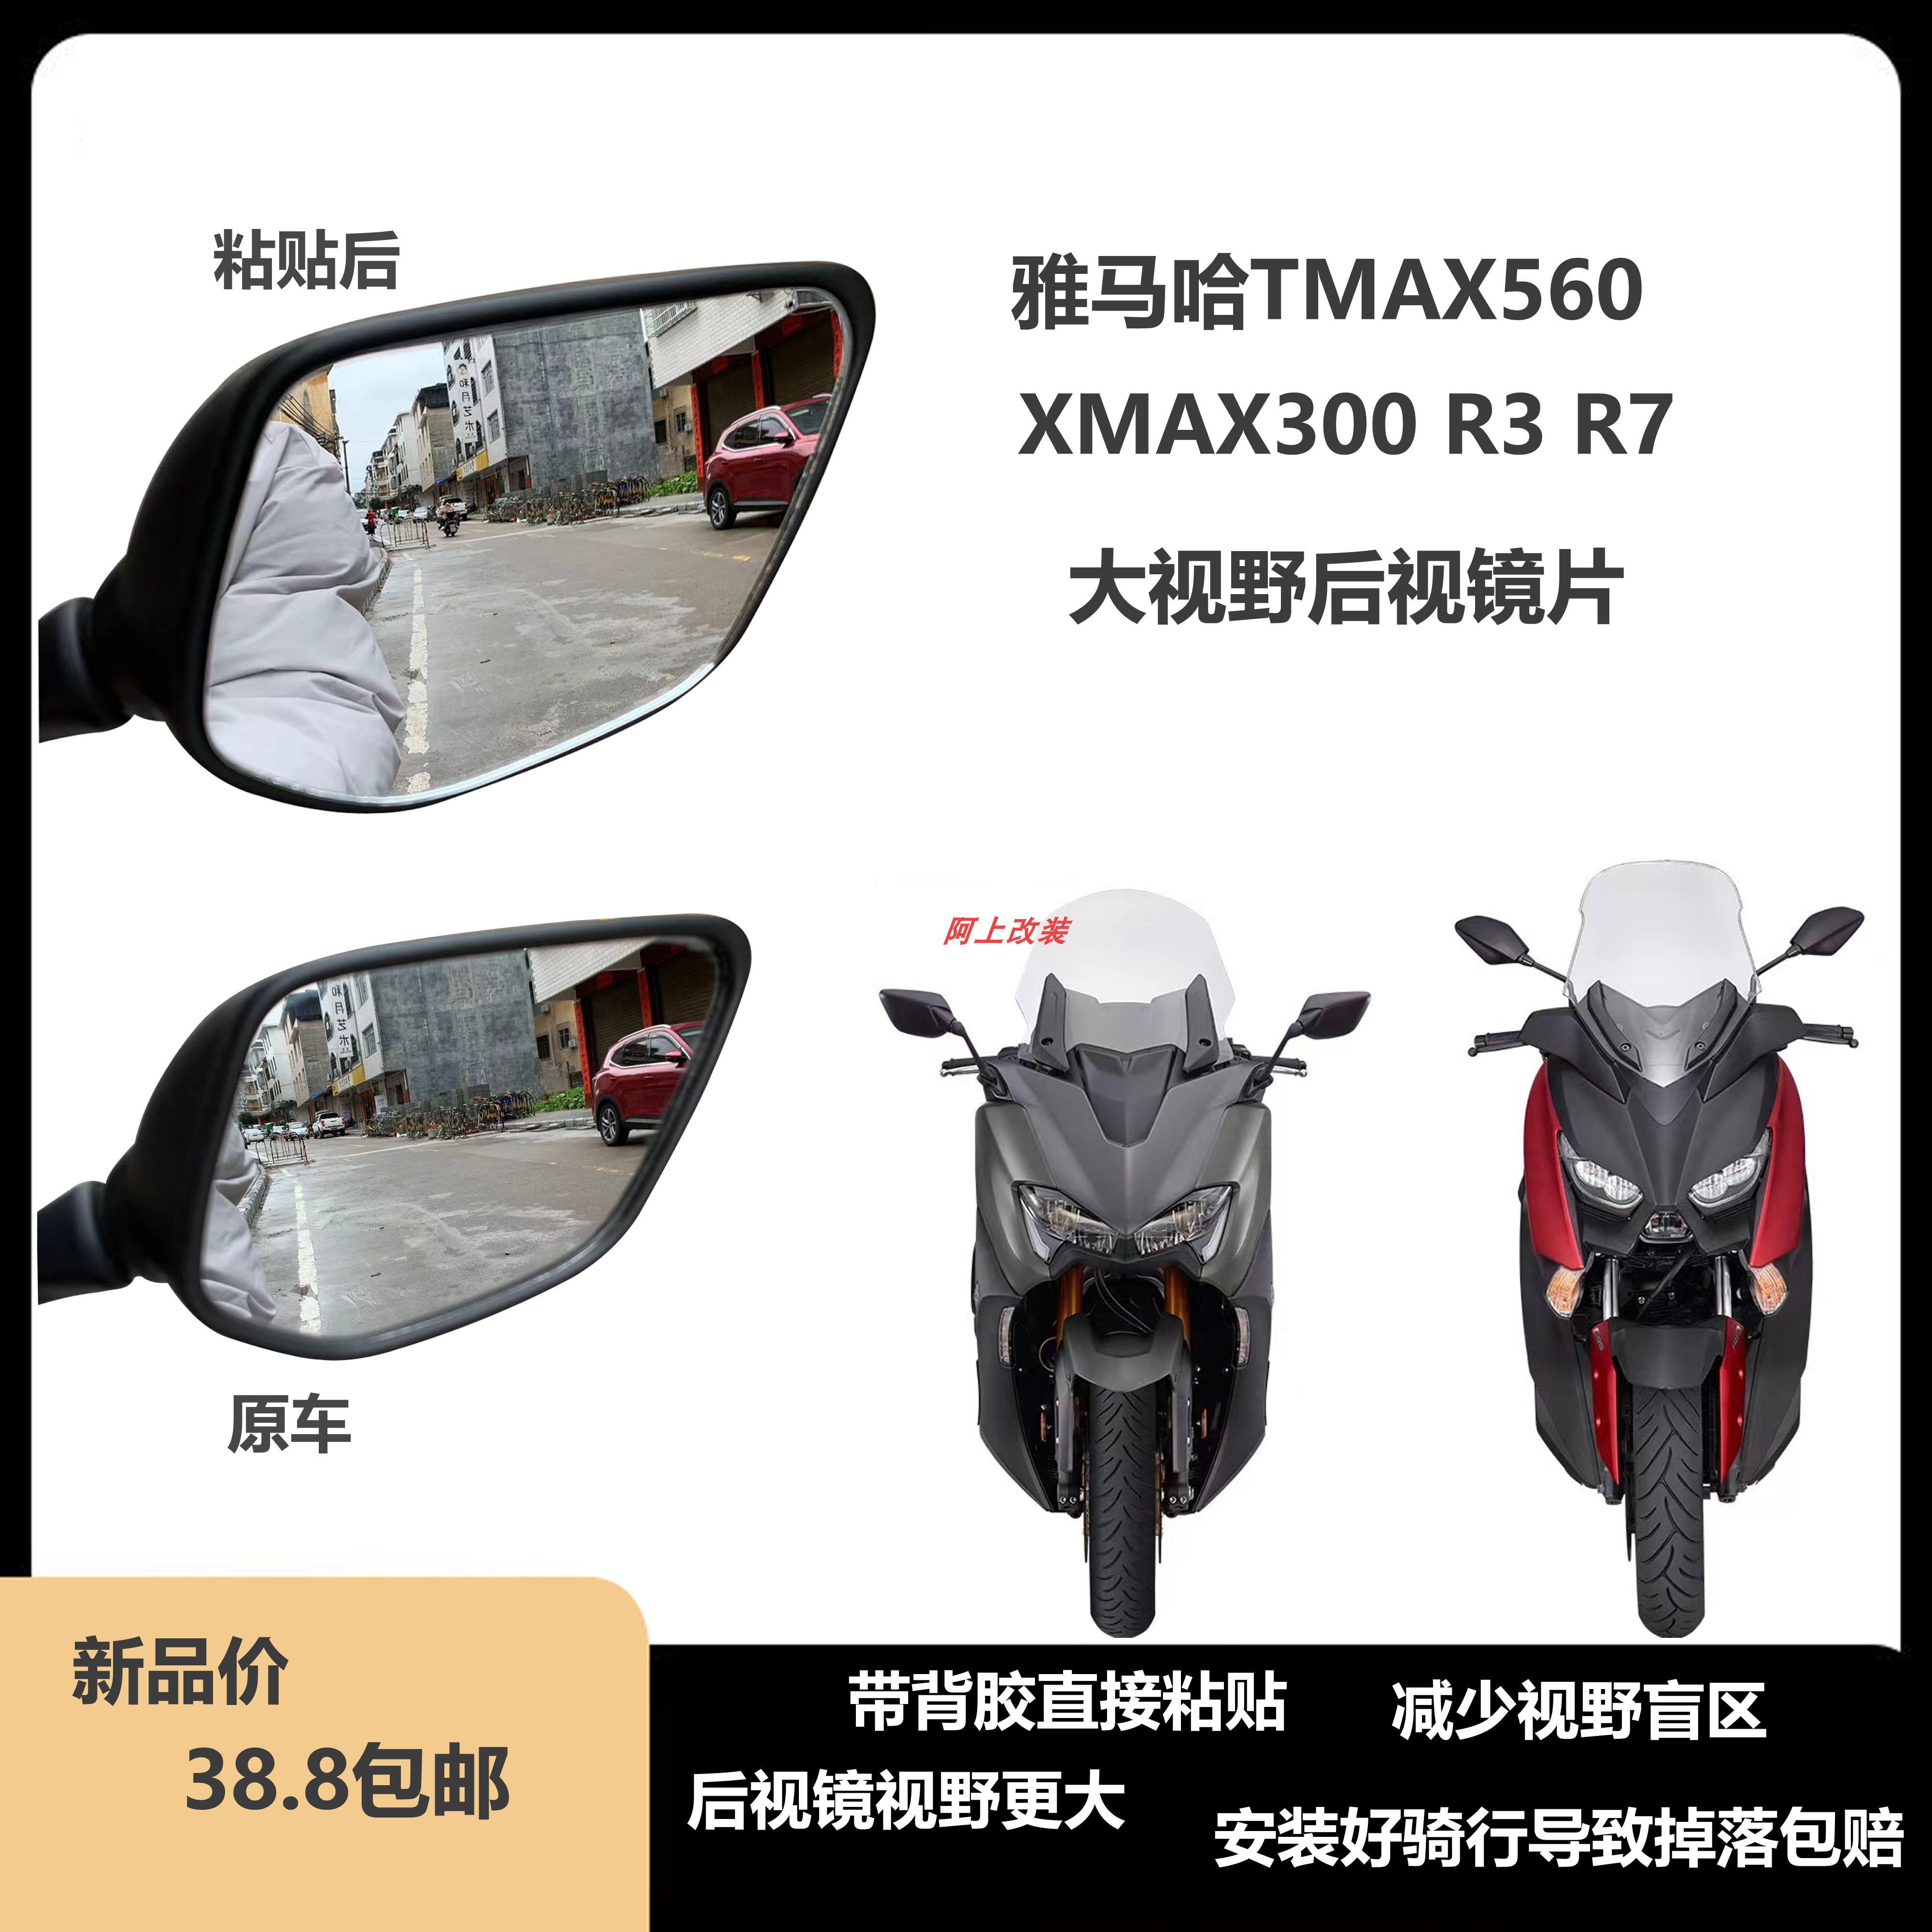 雅马哈XMAX300TMAX560530 R3 R7改装后视镜片 3D凸面镜 安装简便